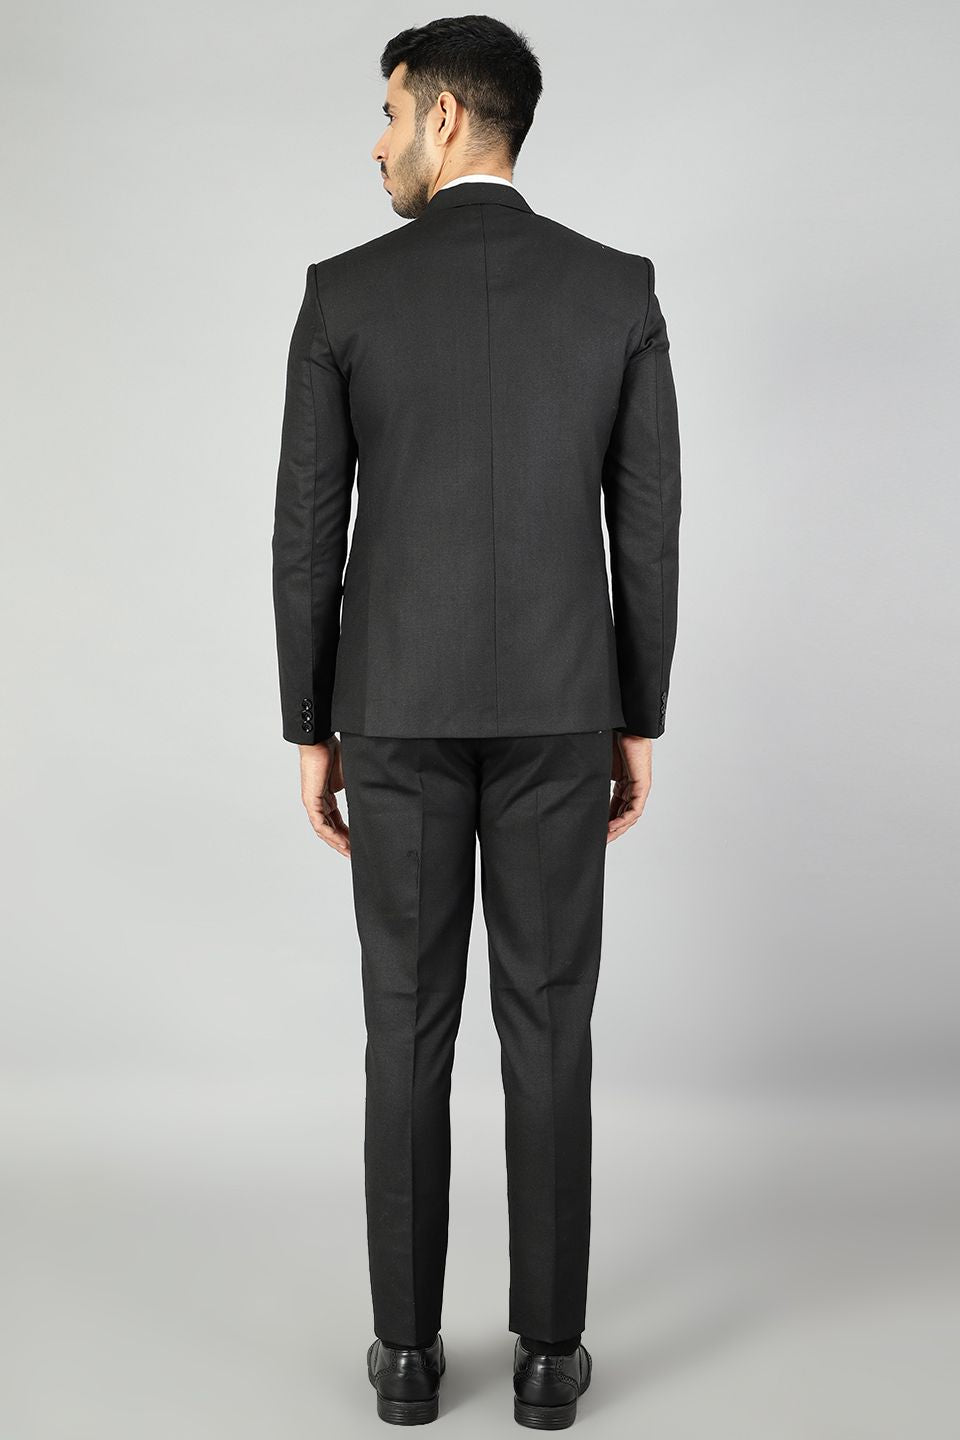 Polyester Cotton Plain Black Two Piece Suit